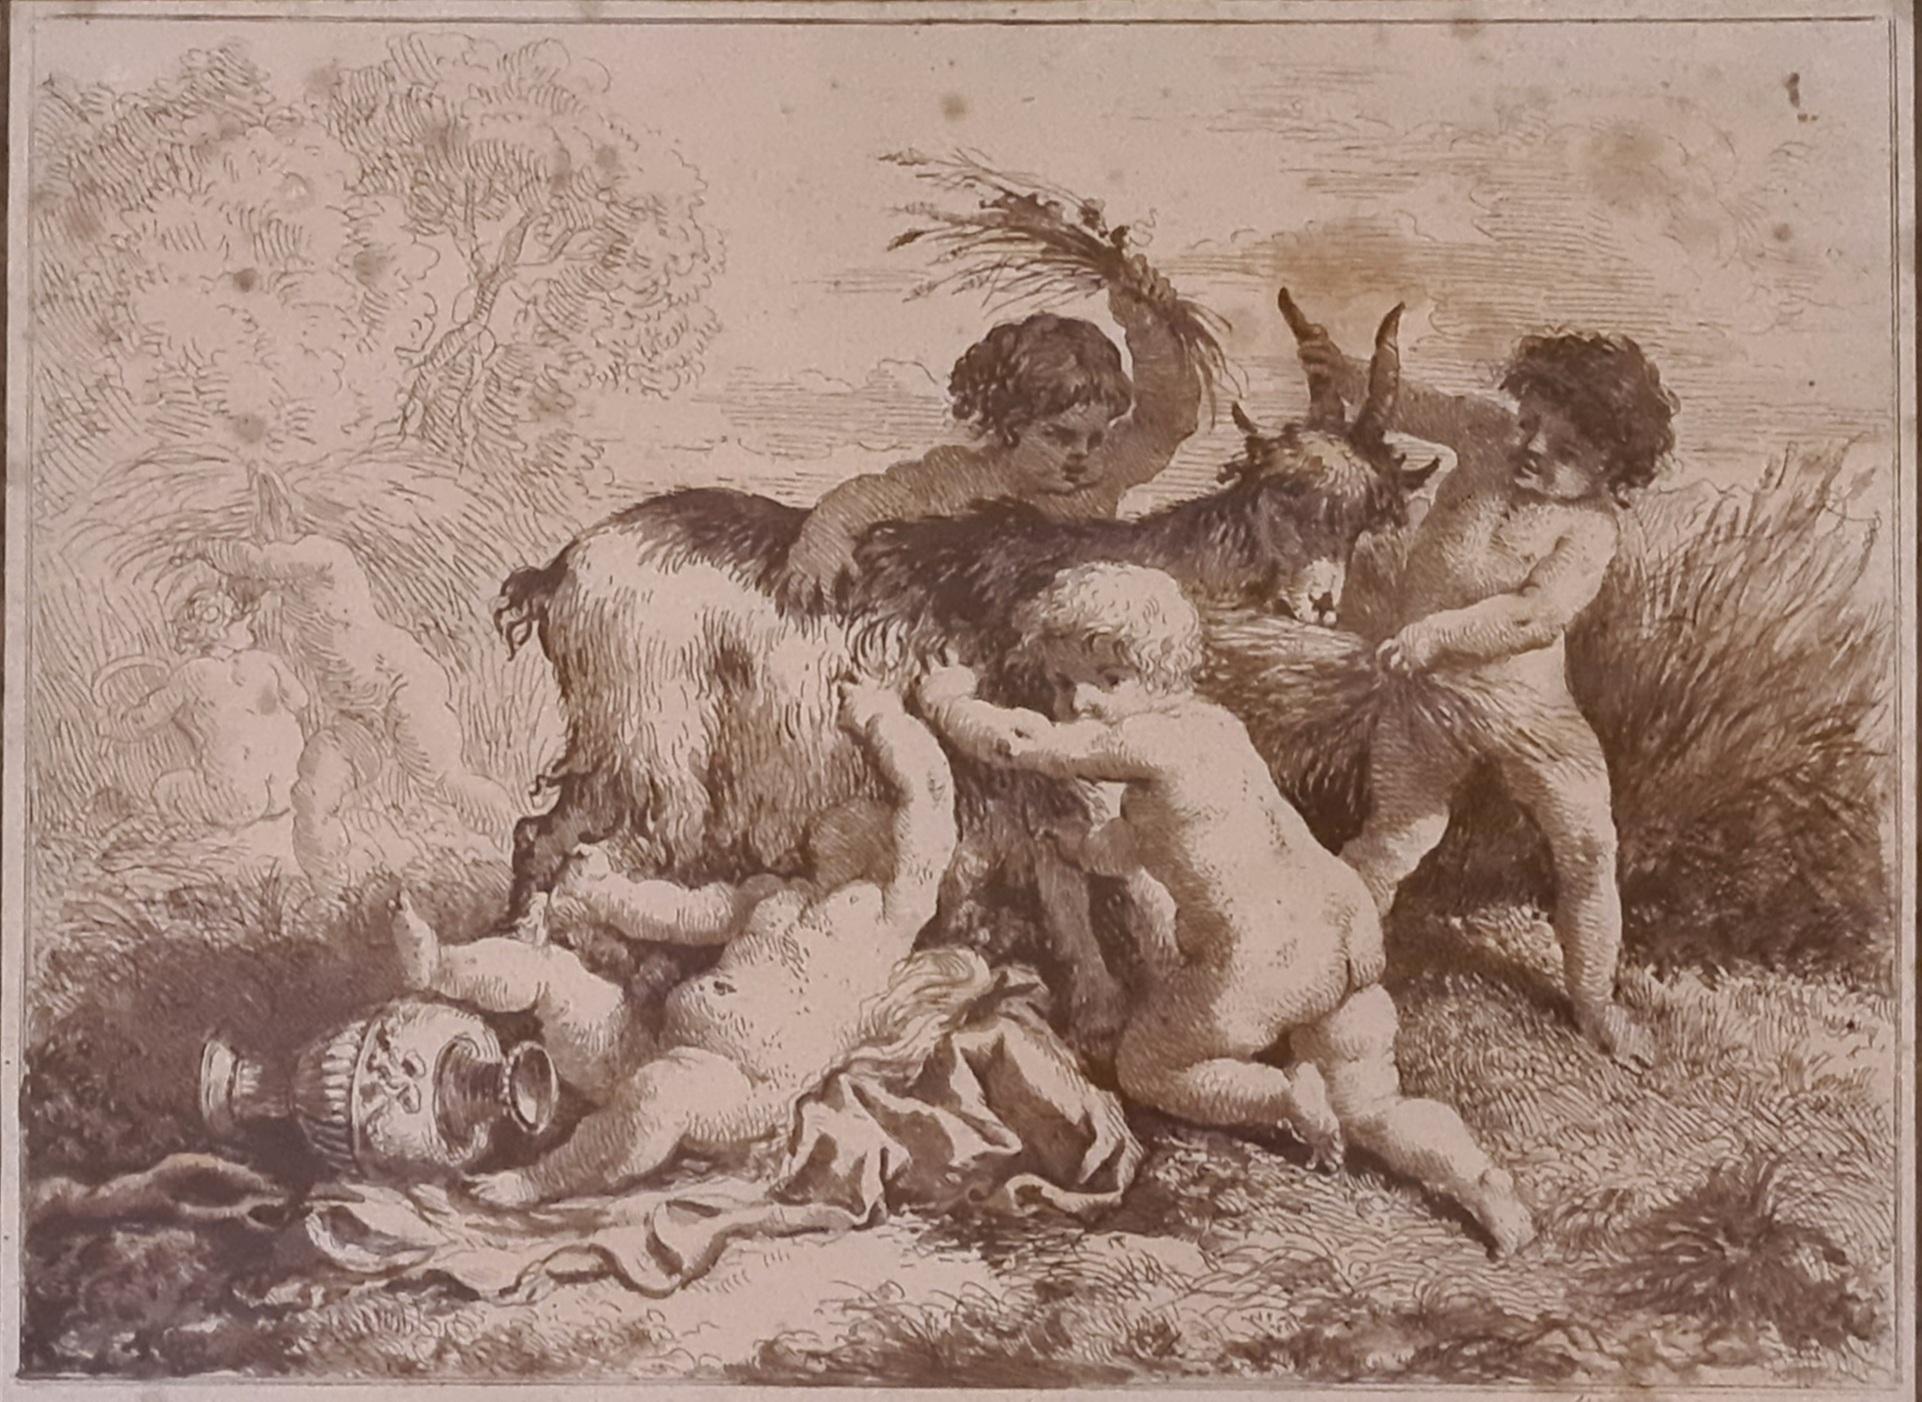 La moisson, chérubins se promenant avec une chèvre, gravure encadrée du 18ème siècle - Print de Jean-Jacques Lagrenée The Younger